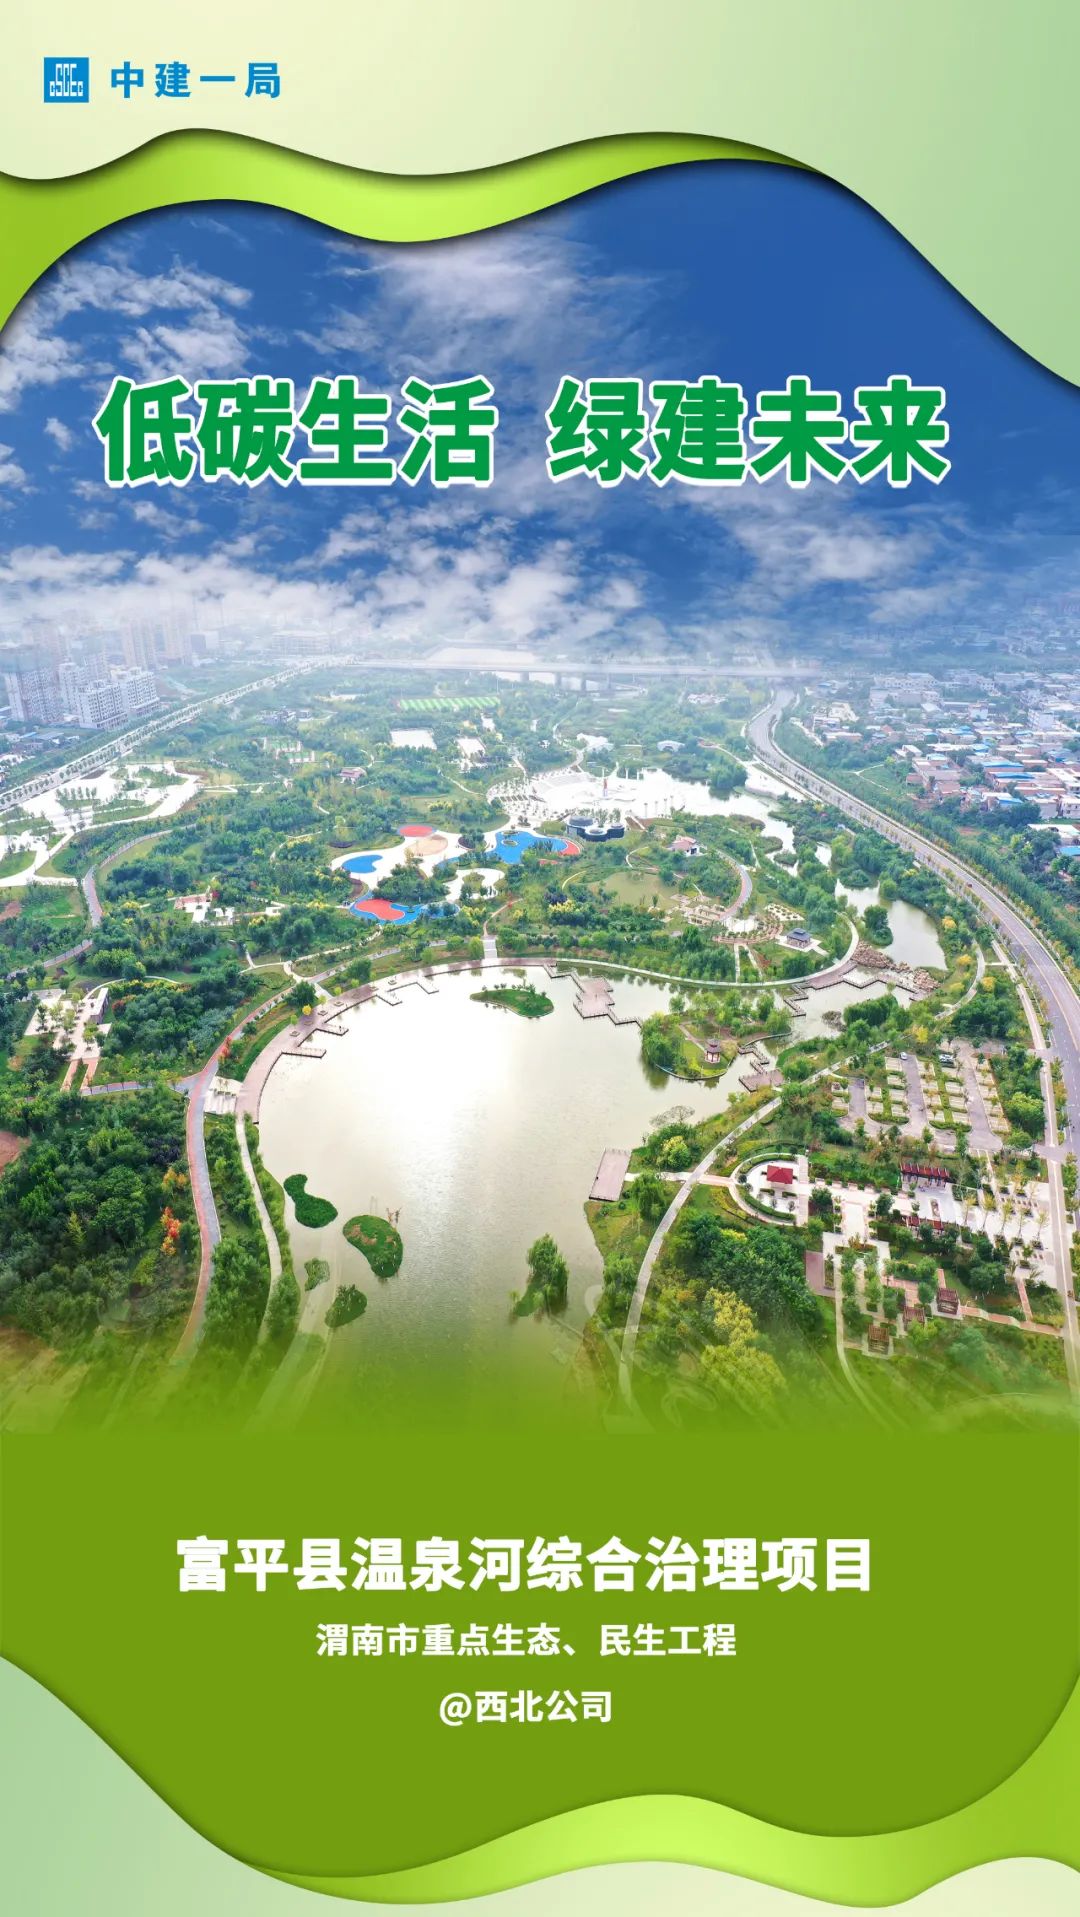 低碳城市在中国什么时候提出的_第一批低碳城市_我国低碳城市建设最早的试点城市